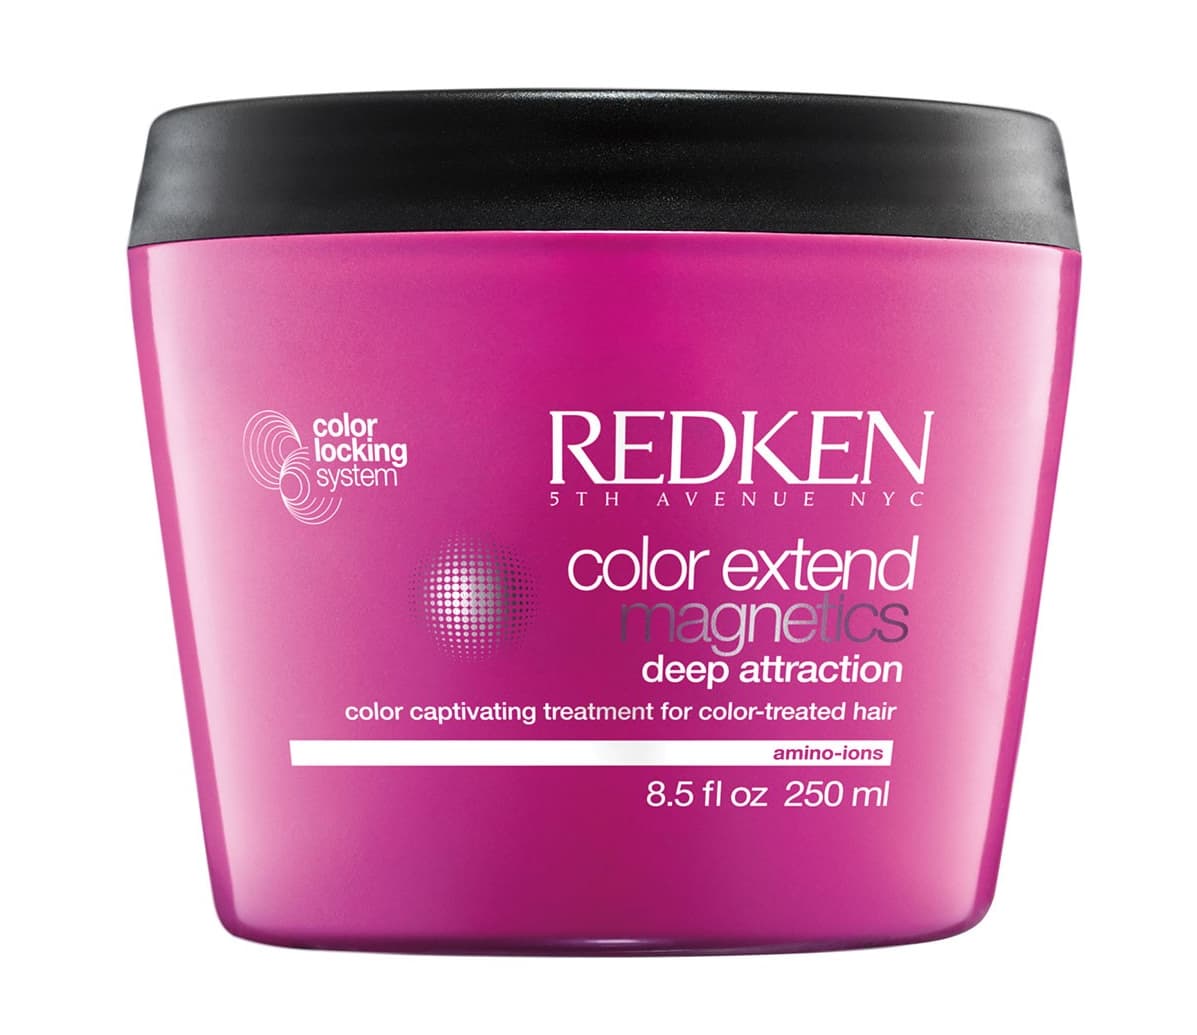 Color color маска для волос отзывы. Redken Color extend Magnetics. Редкен маска для волос. Redken Color extend Magnetics Deep attraction. Redken Color extend Magnetics маска с двойной формулой для защиты цвета окрашенных волос.